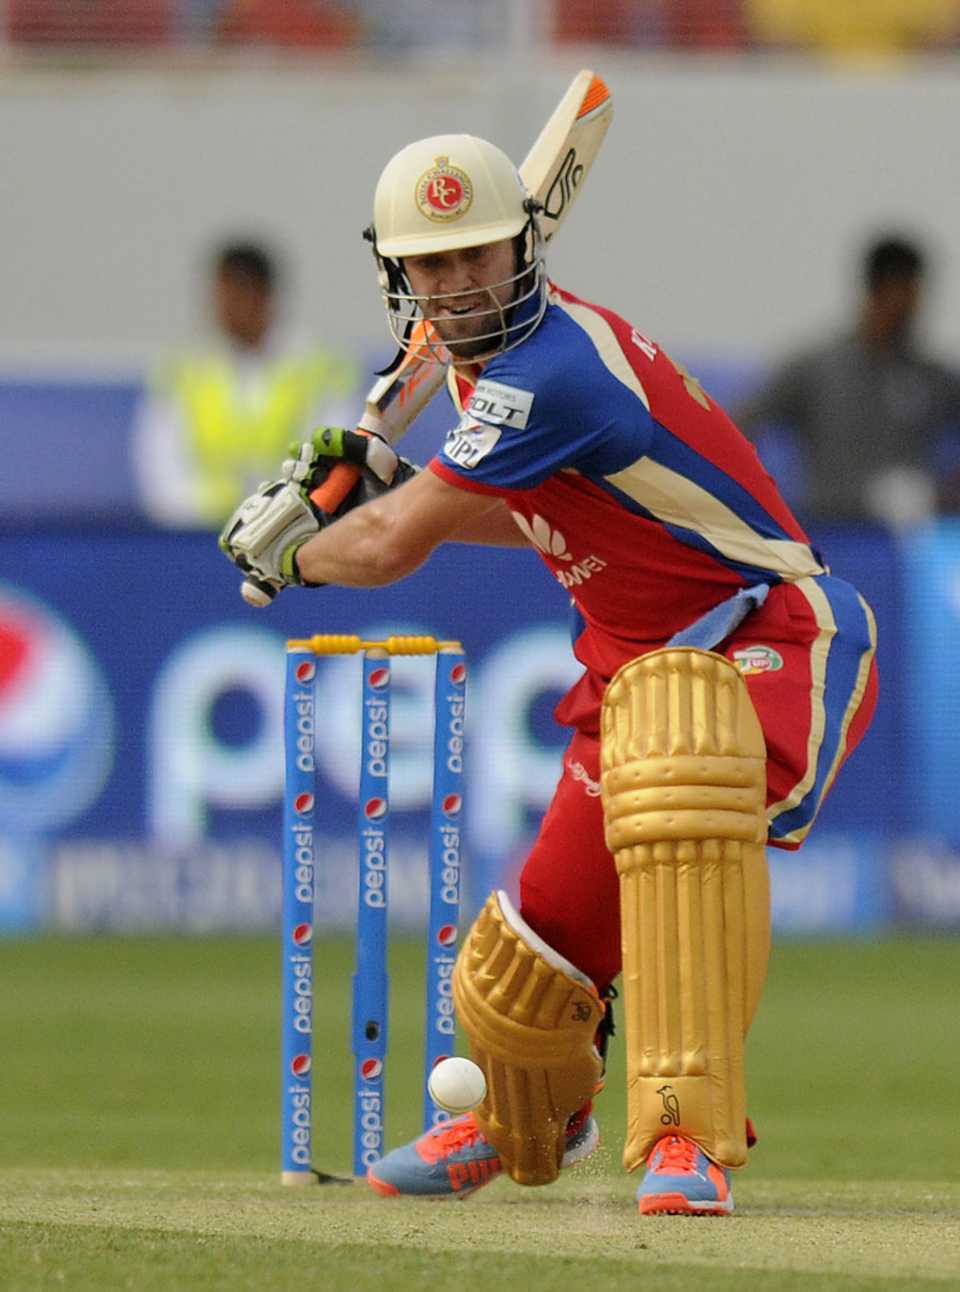 AB de Villiers sets up for a big hit, Royal Challengers Bangalore v Mumbai Indians, Indian Premier League, Dubai, April 19, 2014